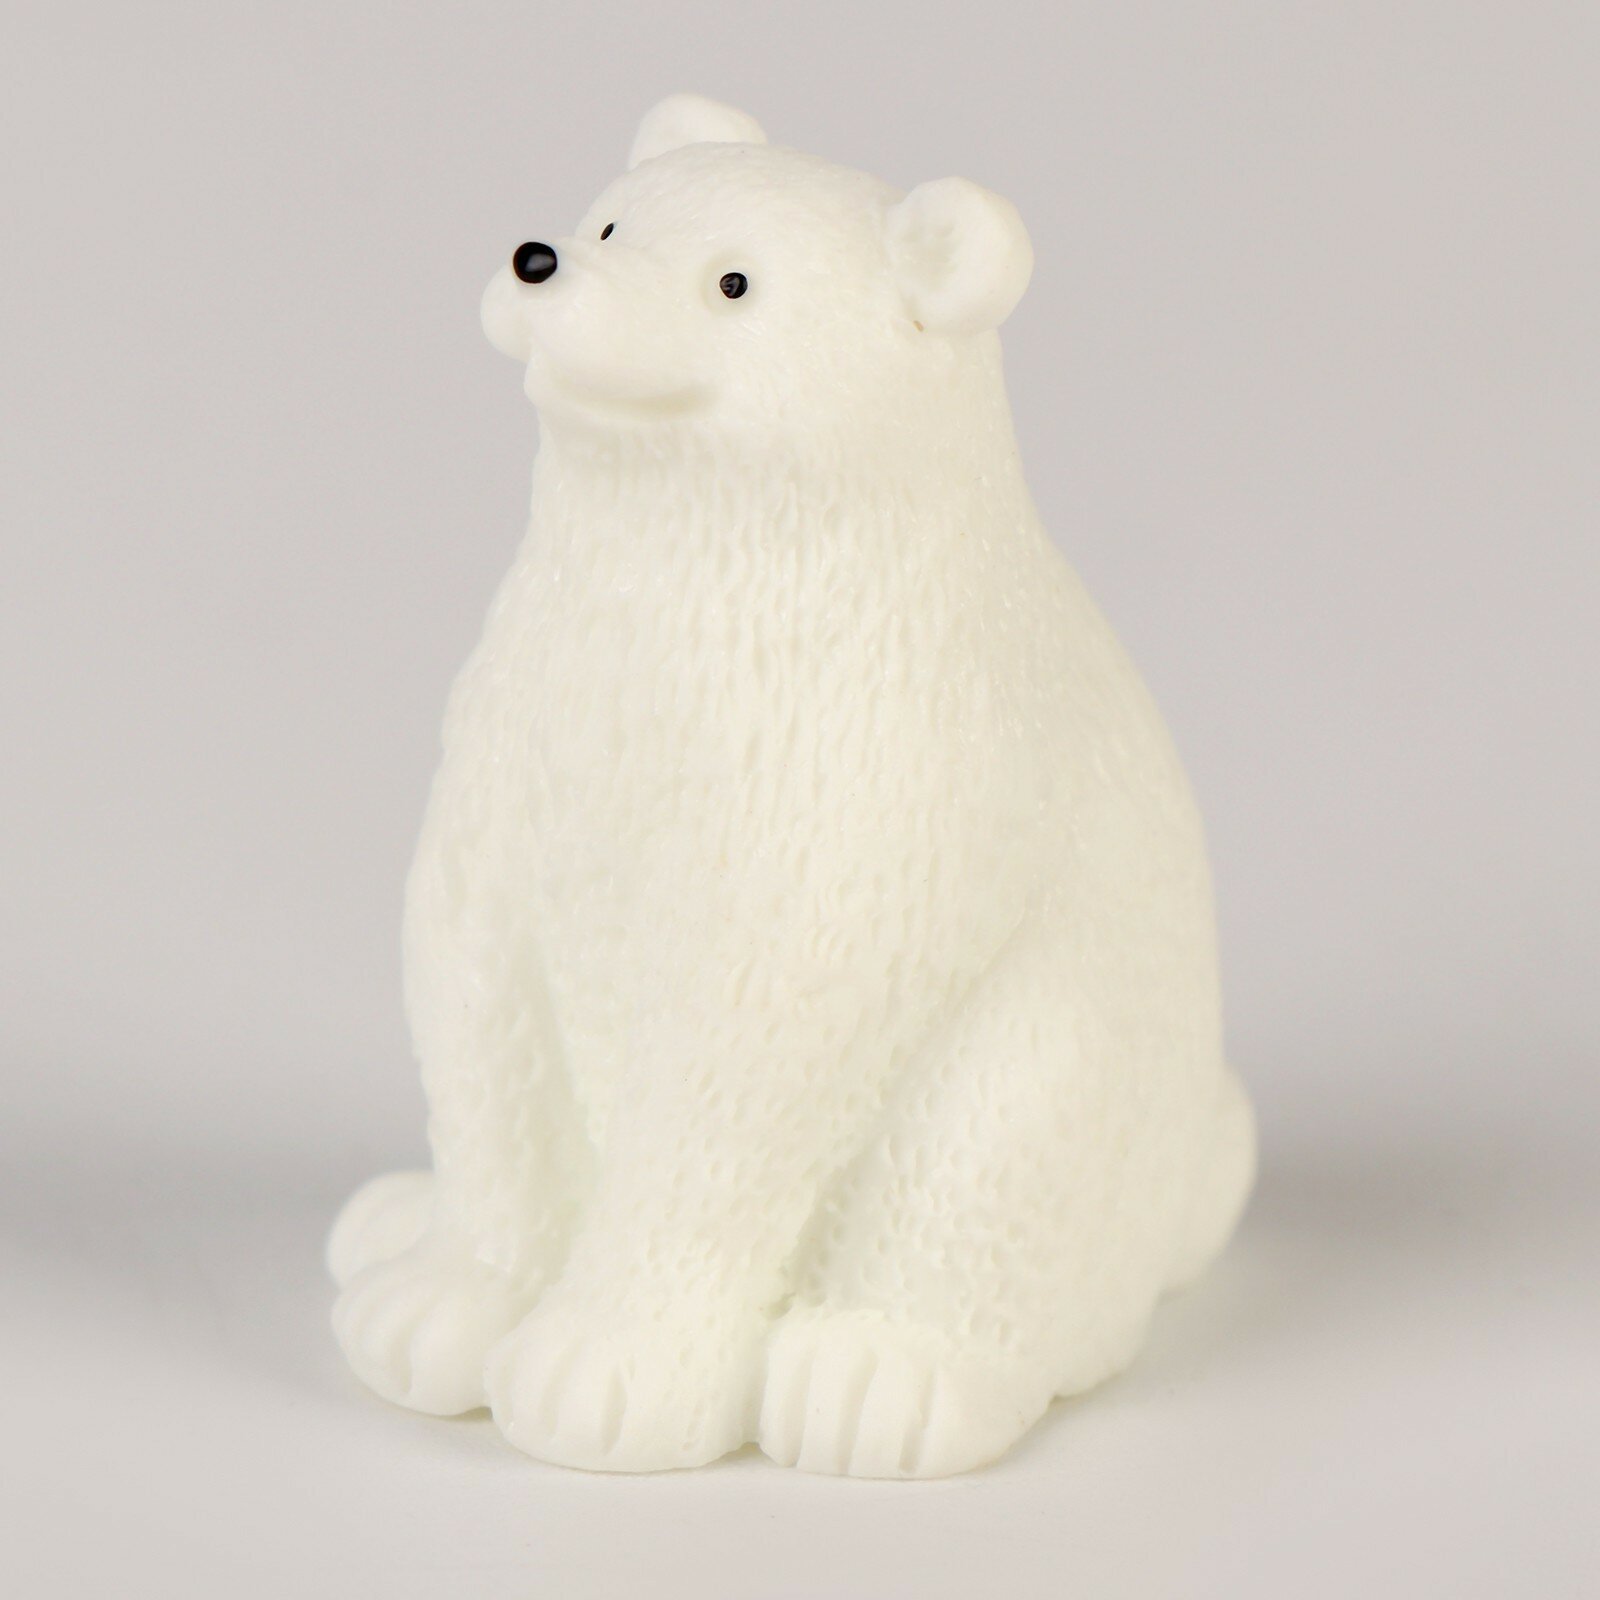 Миниатюра кукольная «Белый медведь», набор 3 шт, размер 1 шт. — 2 × 2 × 3 см